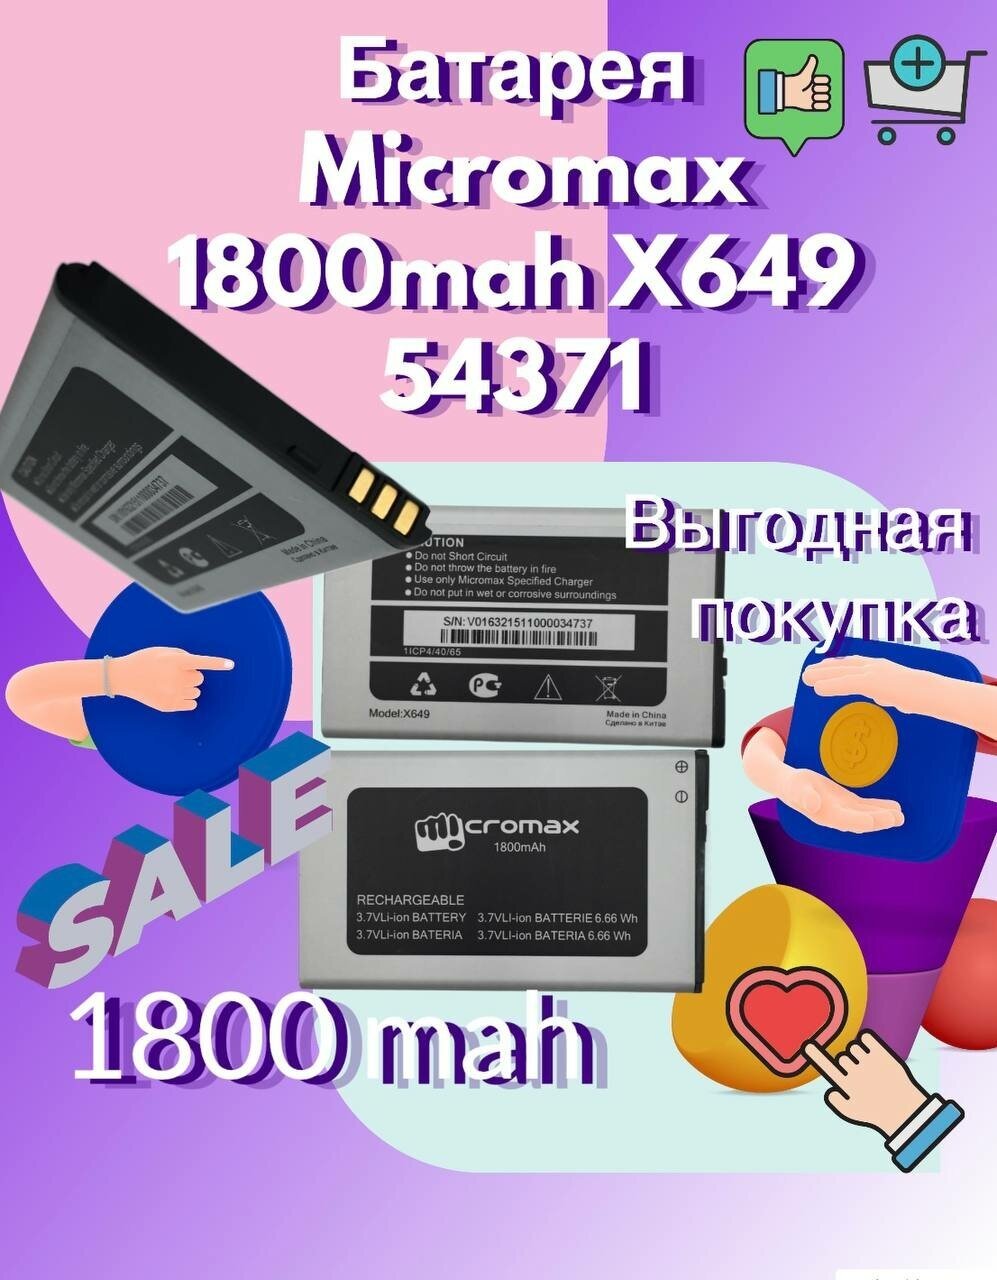 Новая Батарея BAT Акб Micromax 1800mah X649 54371